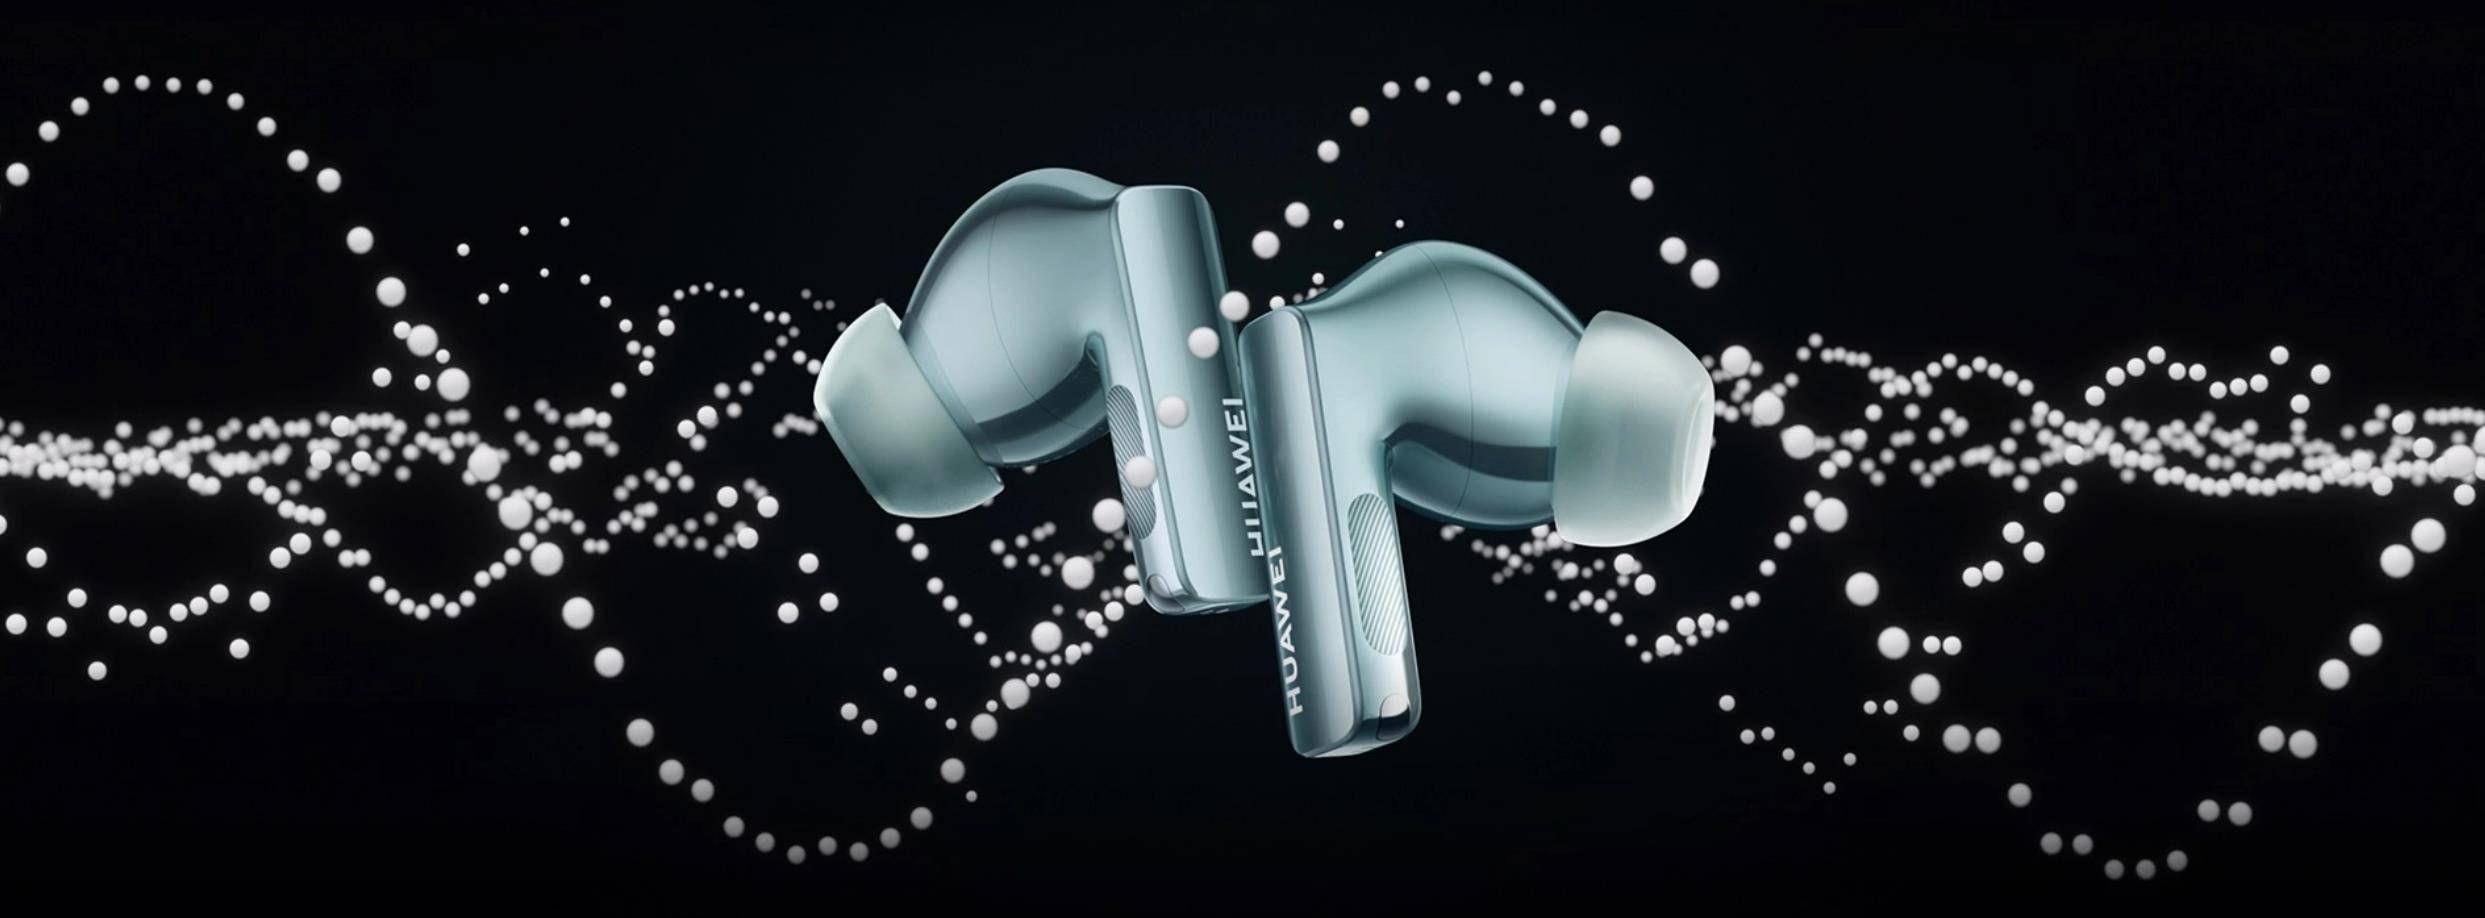 Huawei's new tech earbuds